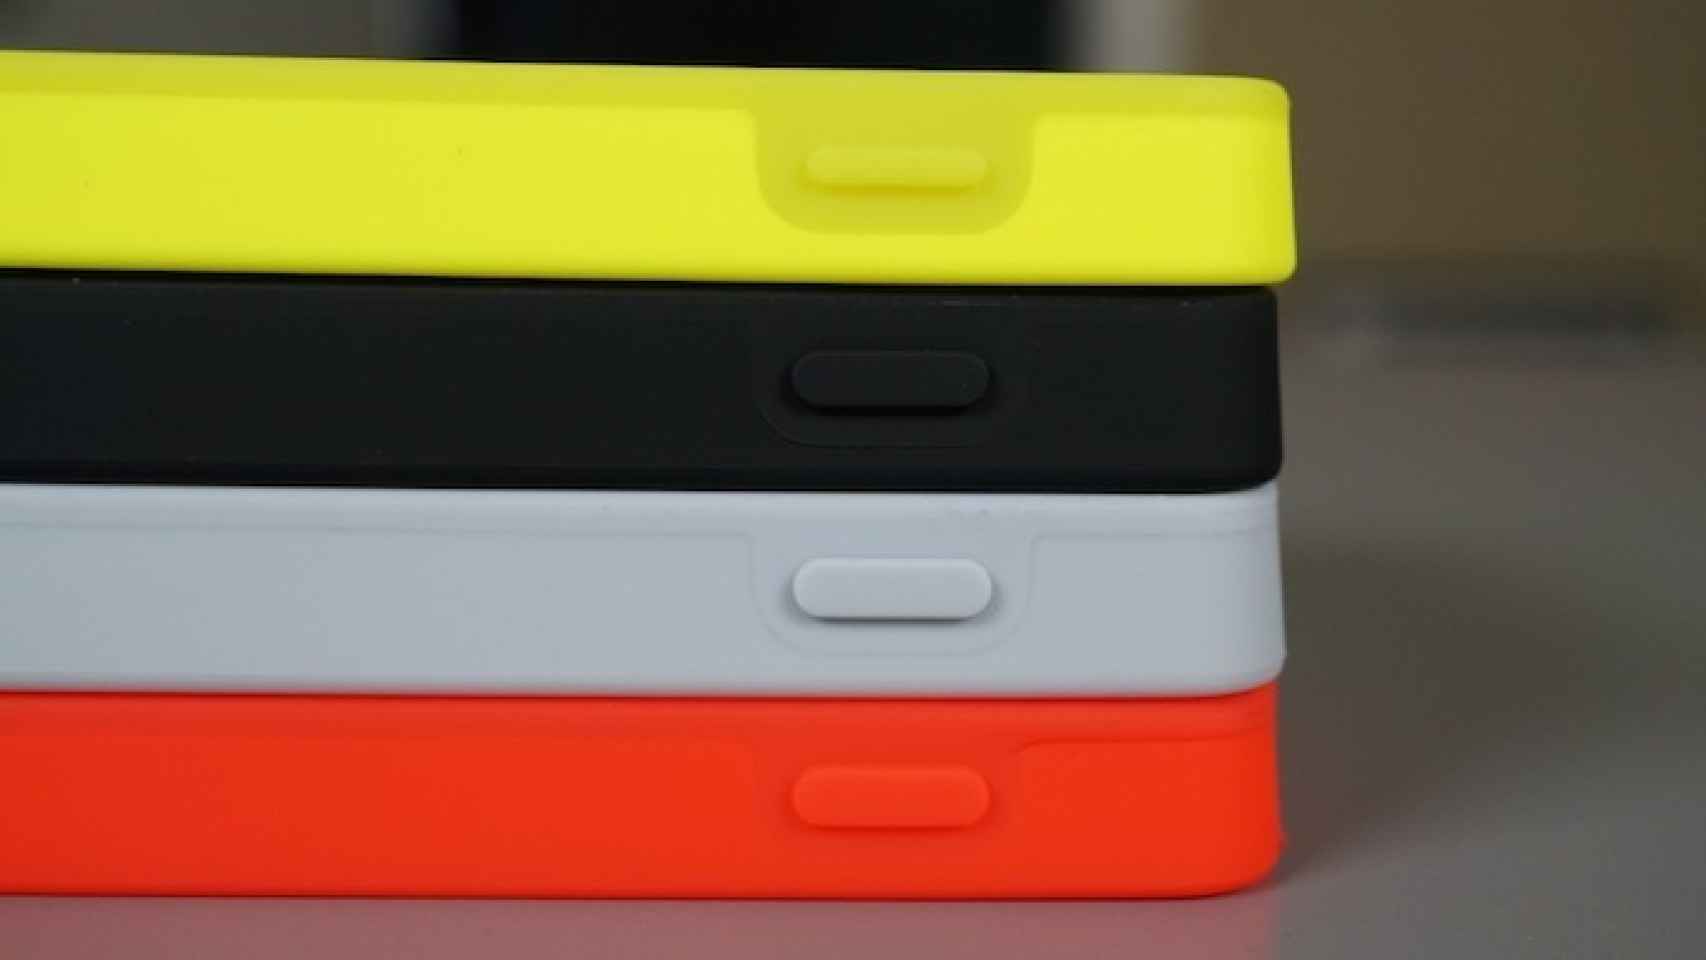 Google renueva las fundas bumper oficiales del Nexus 5 con botones más gruesos y mejor ergonomía